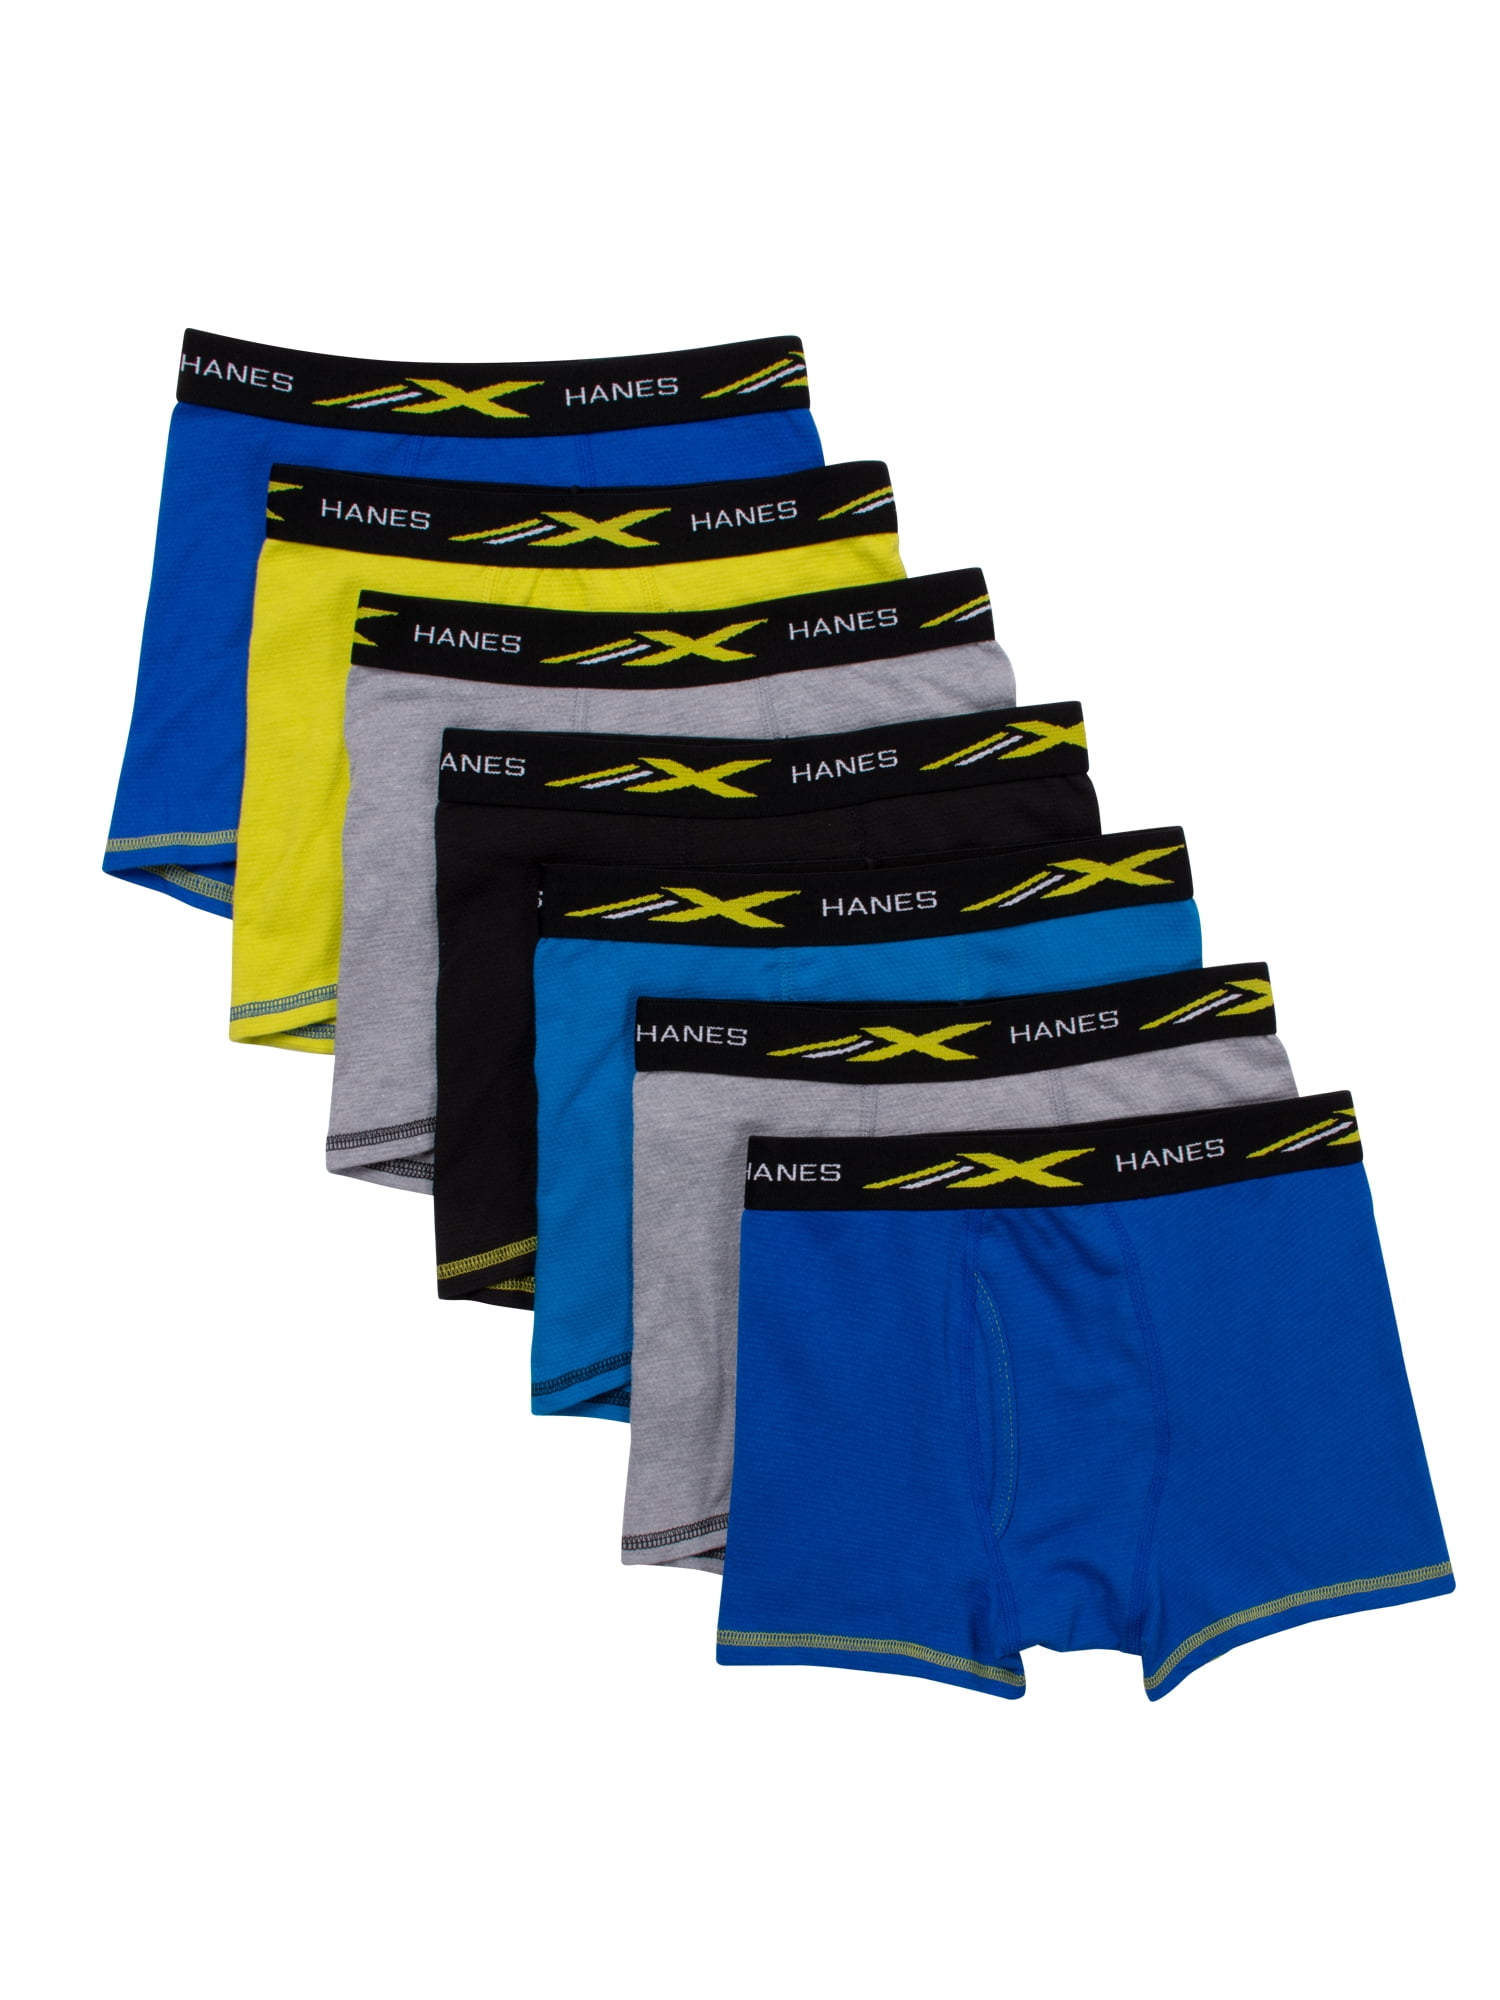 Hanes Boys' Underwear, X-Temp Stretch Mesh Boxer Briefs 5 Pack